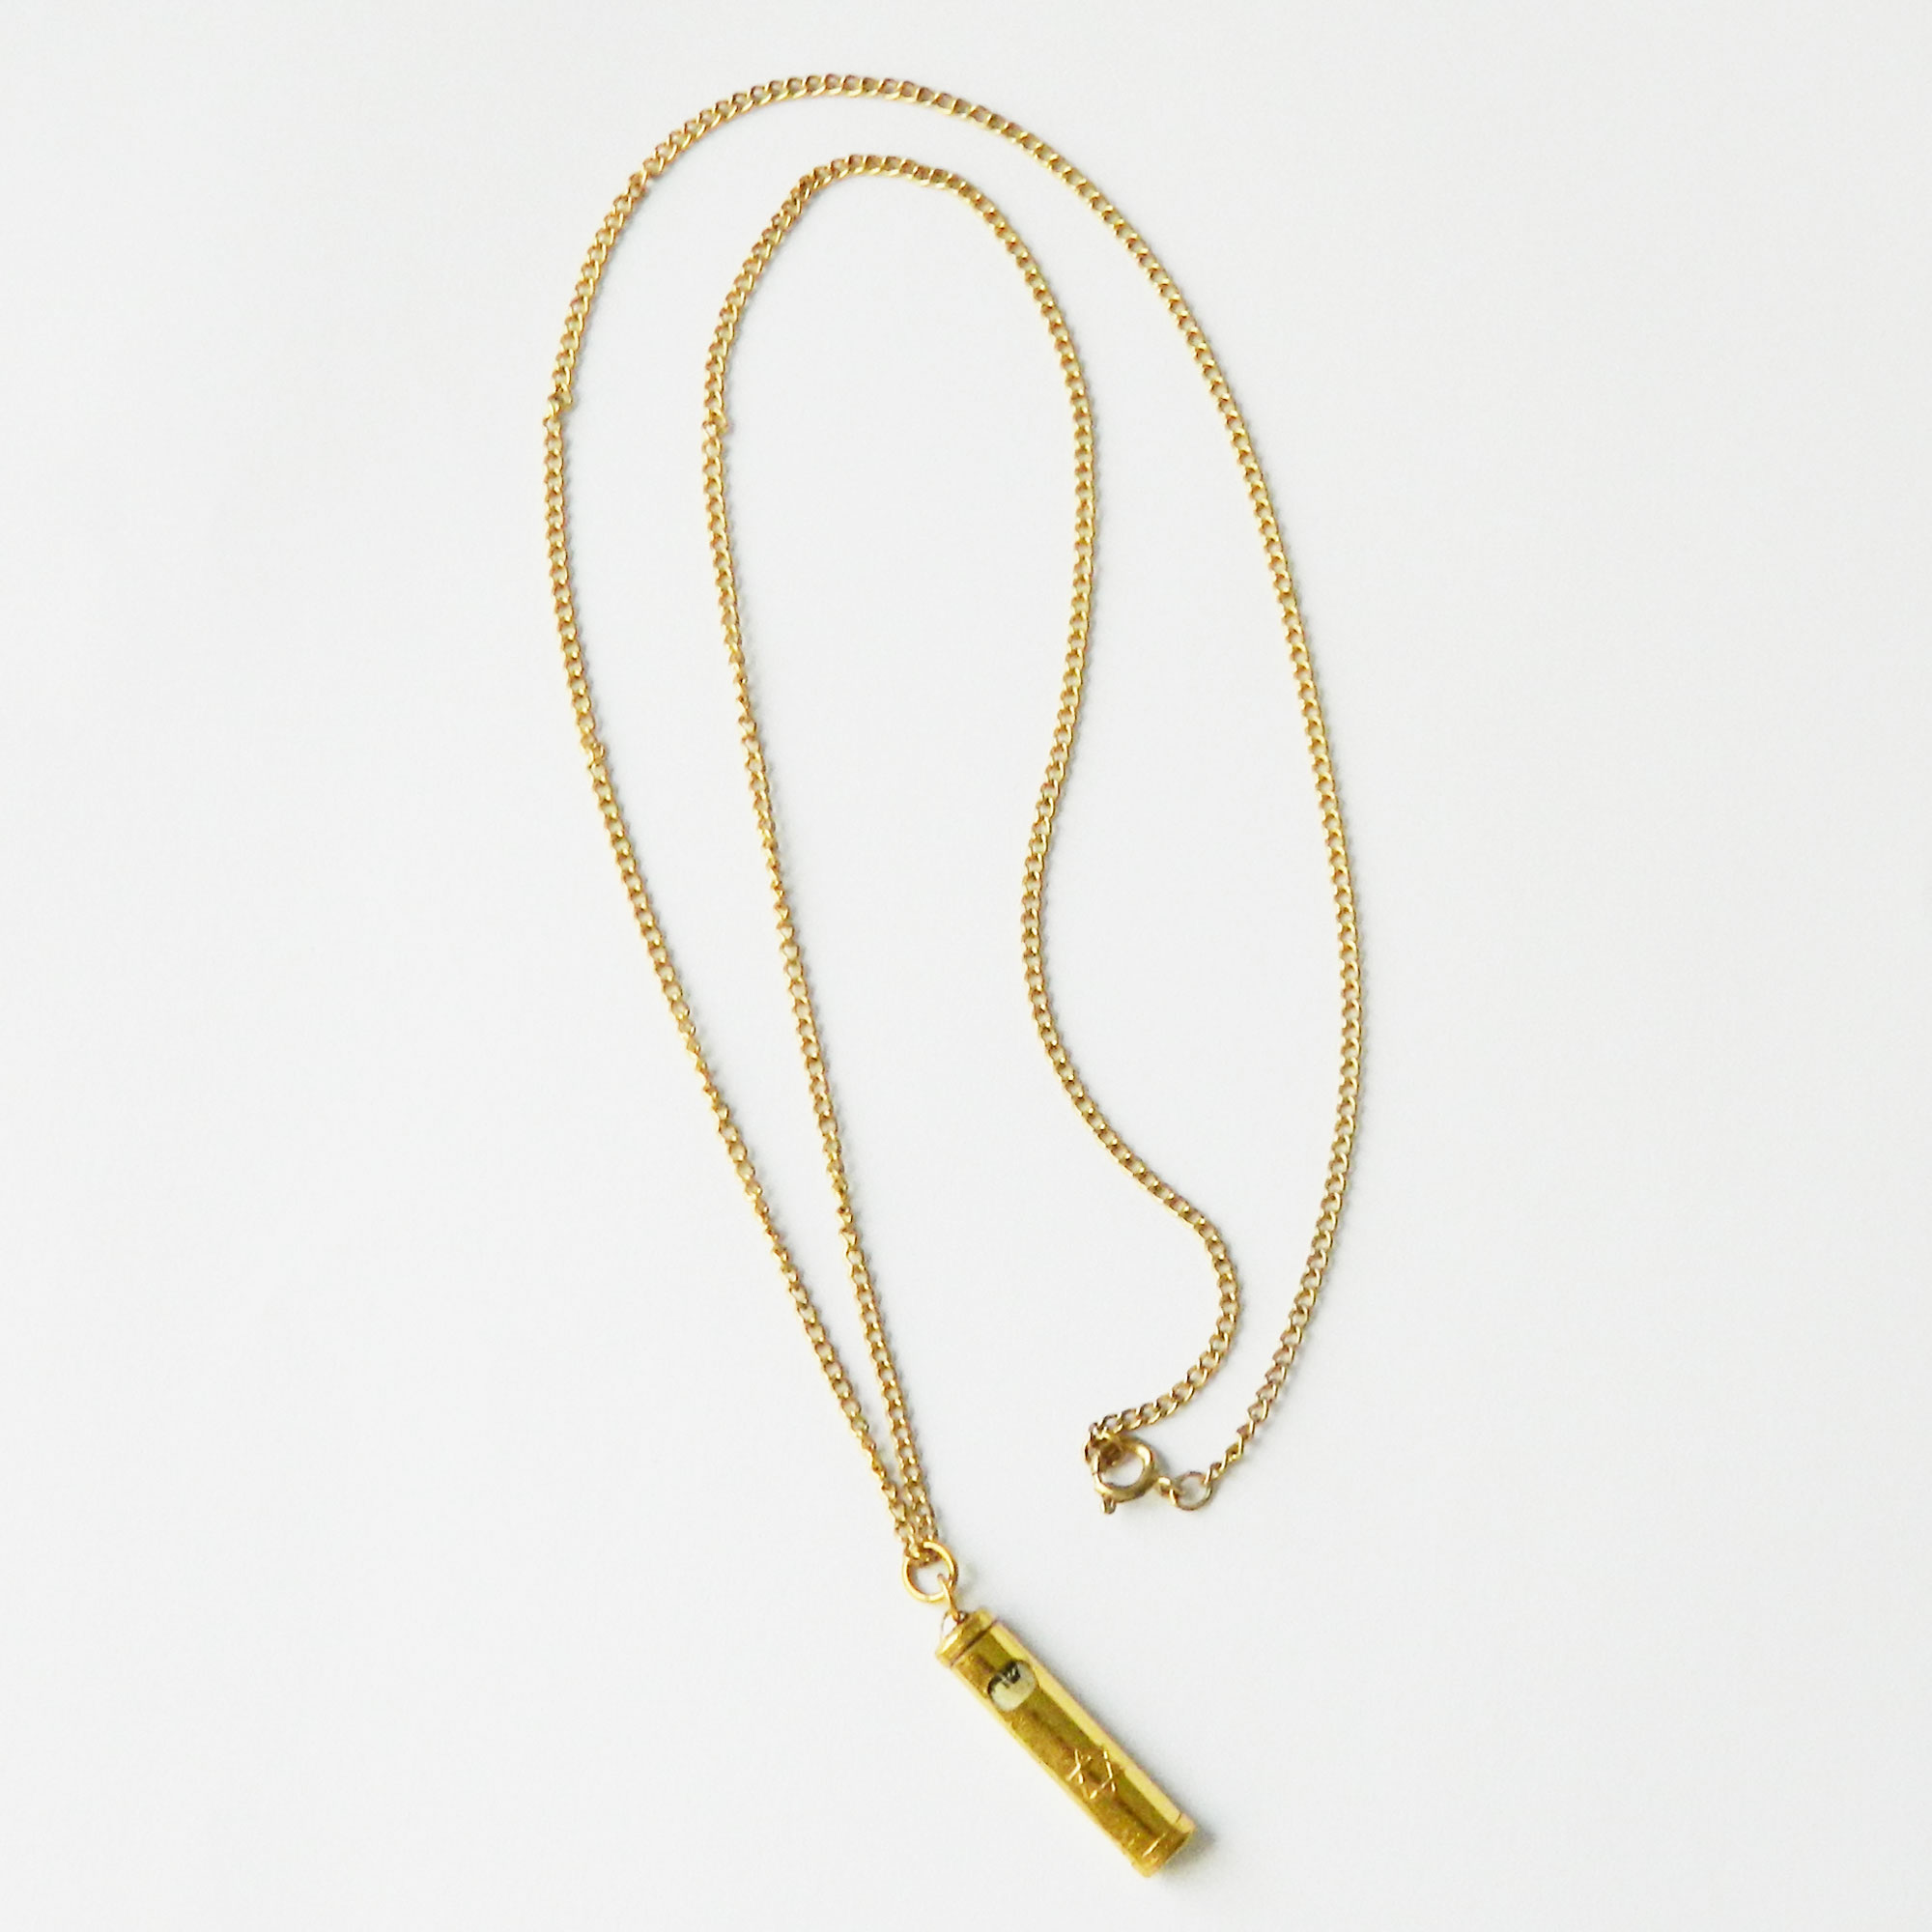 Vintage mezuzah pendant necklace